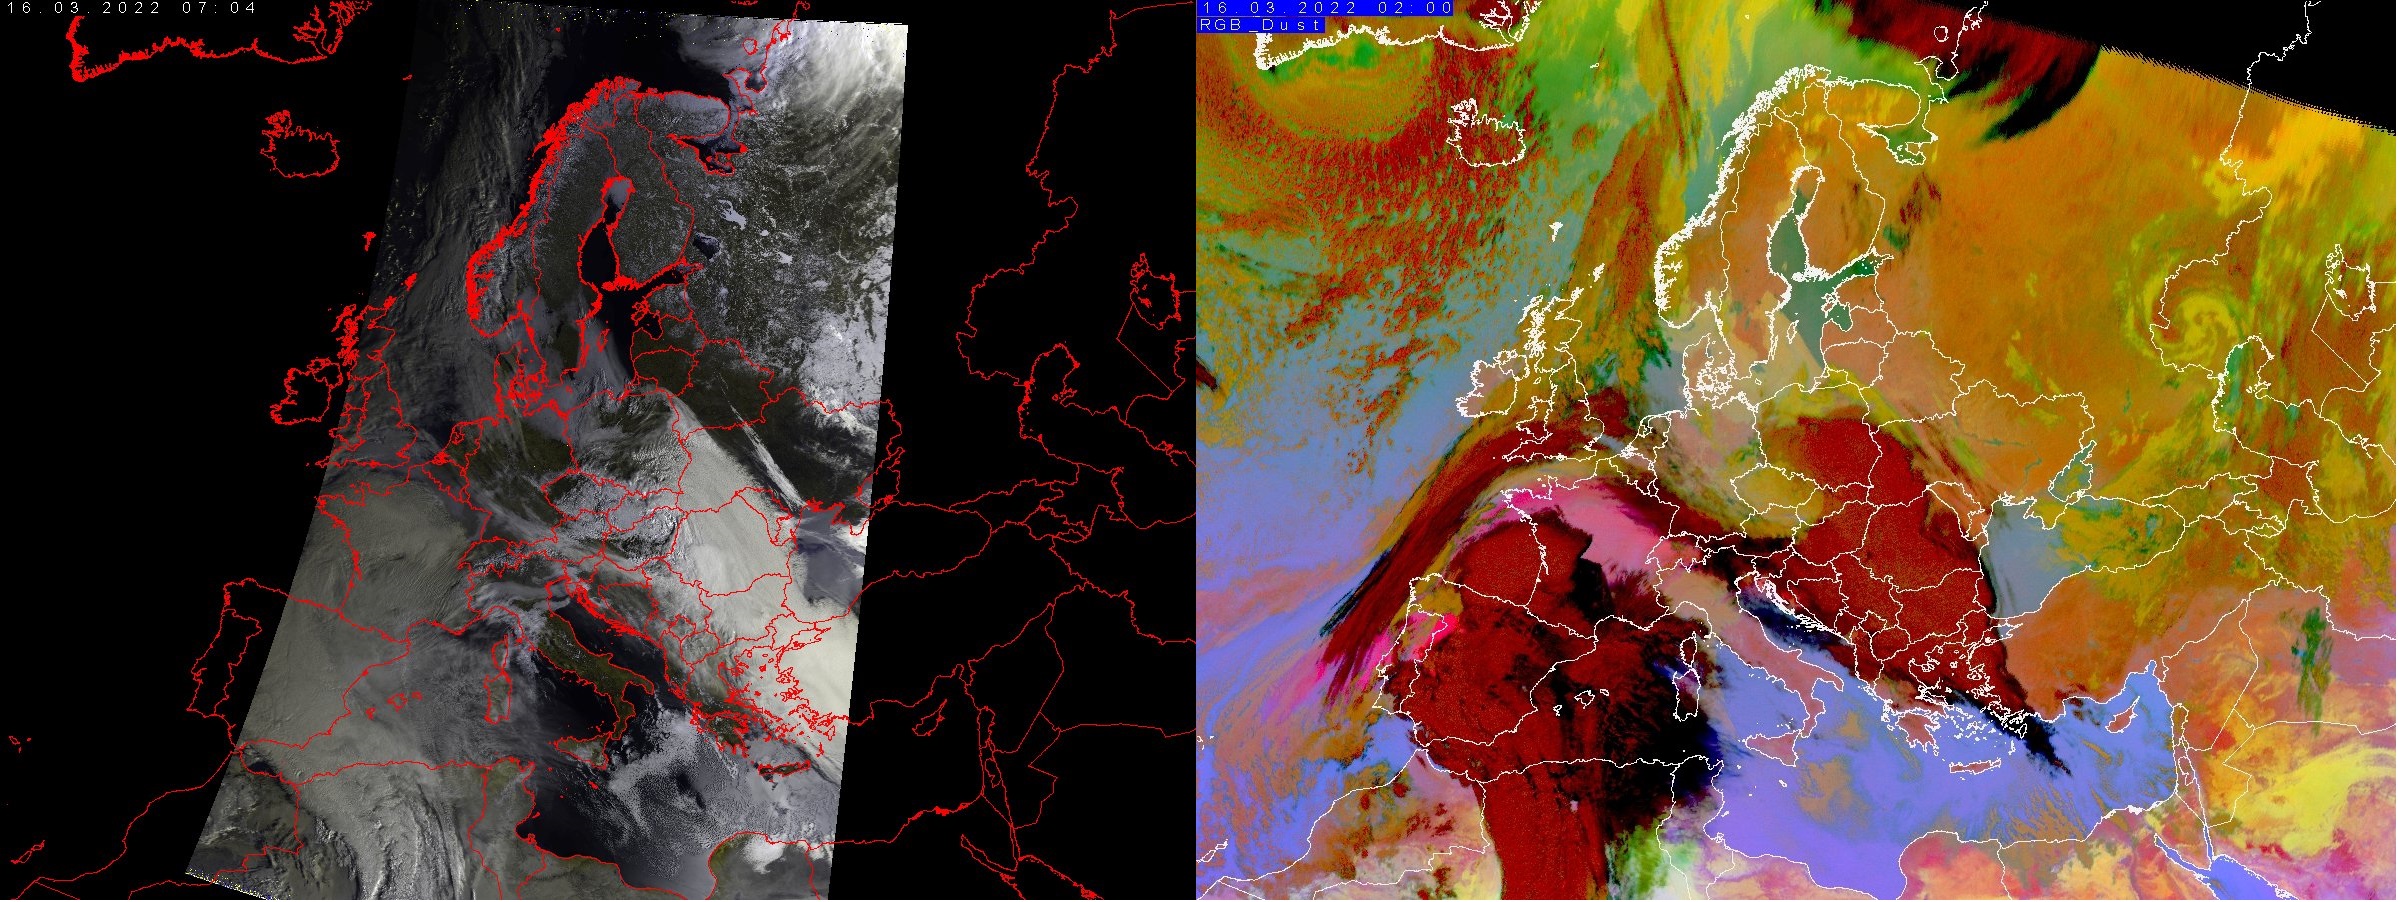 Po lewej: Kompozycja RGB False Colour wykonana 16 marca z godz. 07:04 z danych z satelity NOAA-19/AVHRR. Po prawej: Kompozycja RGB DUST  wykonana 16 marca z godz. 02:00 (źródło IMGW-PIB).